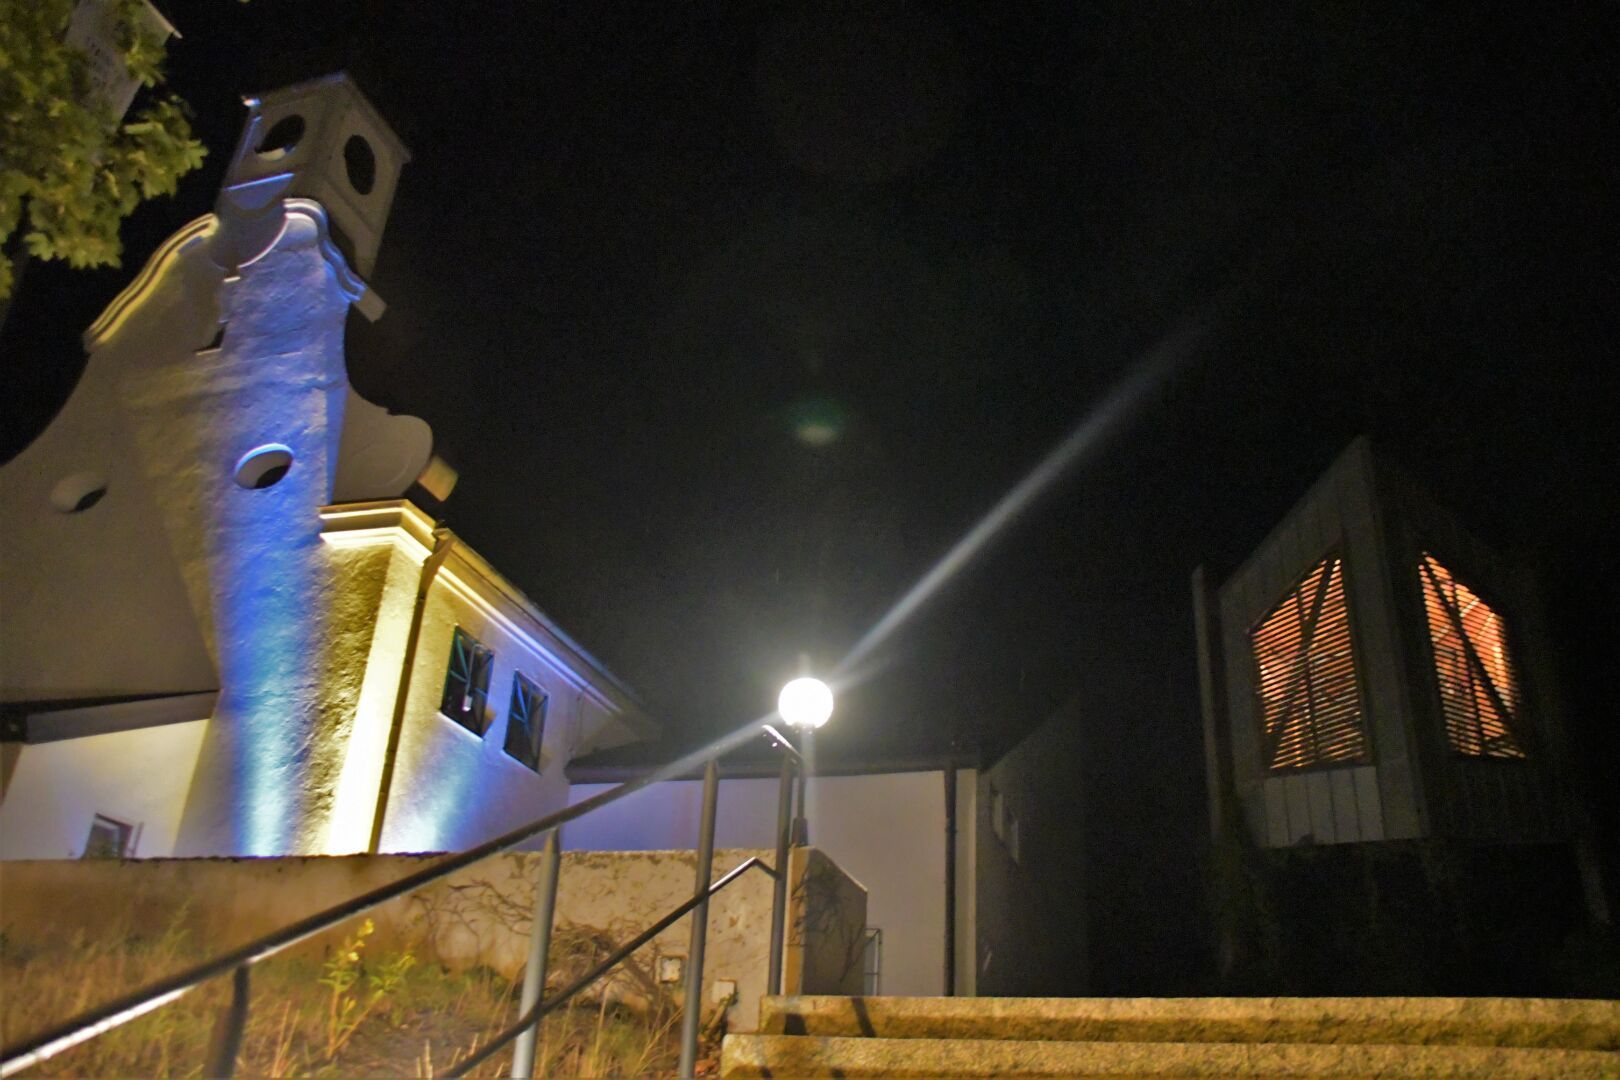 Bei der Nacht der offenen Kirchen war in der Versöhnungskirche viel los: Die Eröffnungsandacht, ein Kinogottesdienst der Ministranten.
Eindrucksvoll auch die Beleuchtung bei Nacht
Fotos: Agnes Jonas, Gerhard Beck